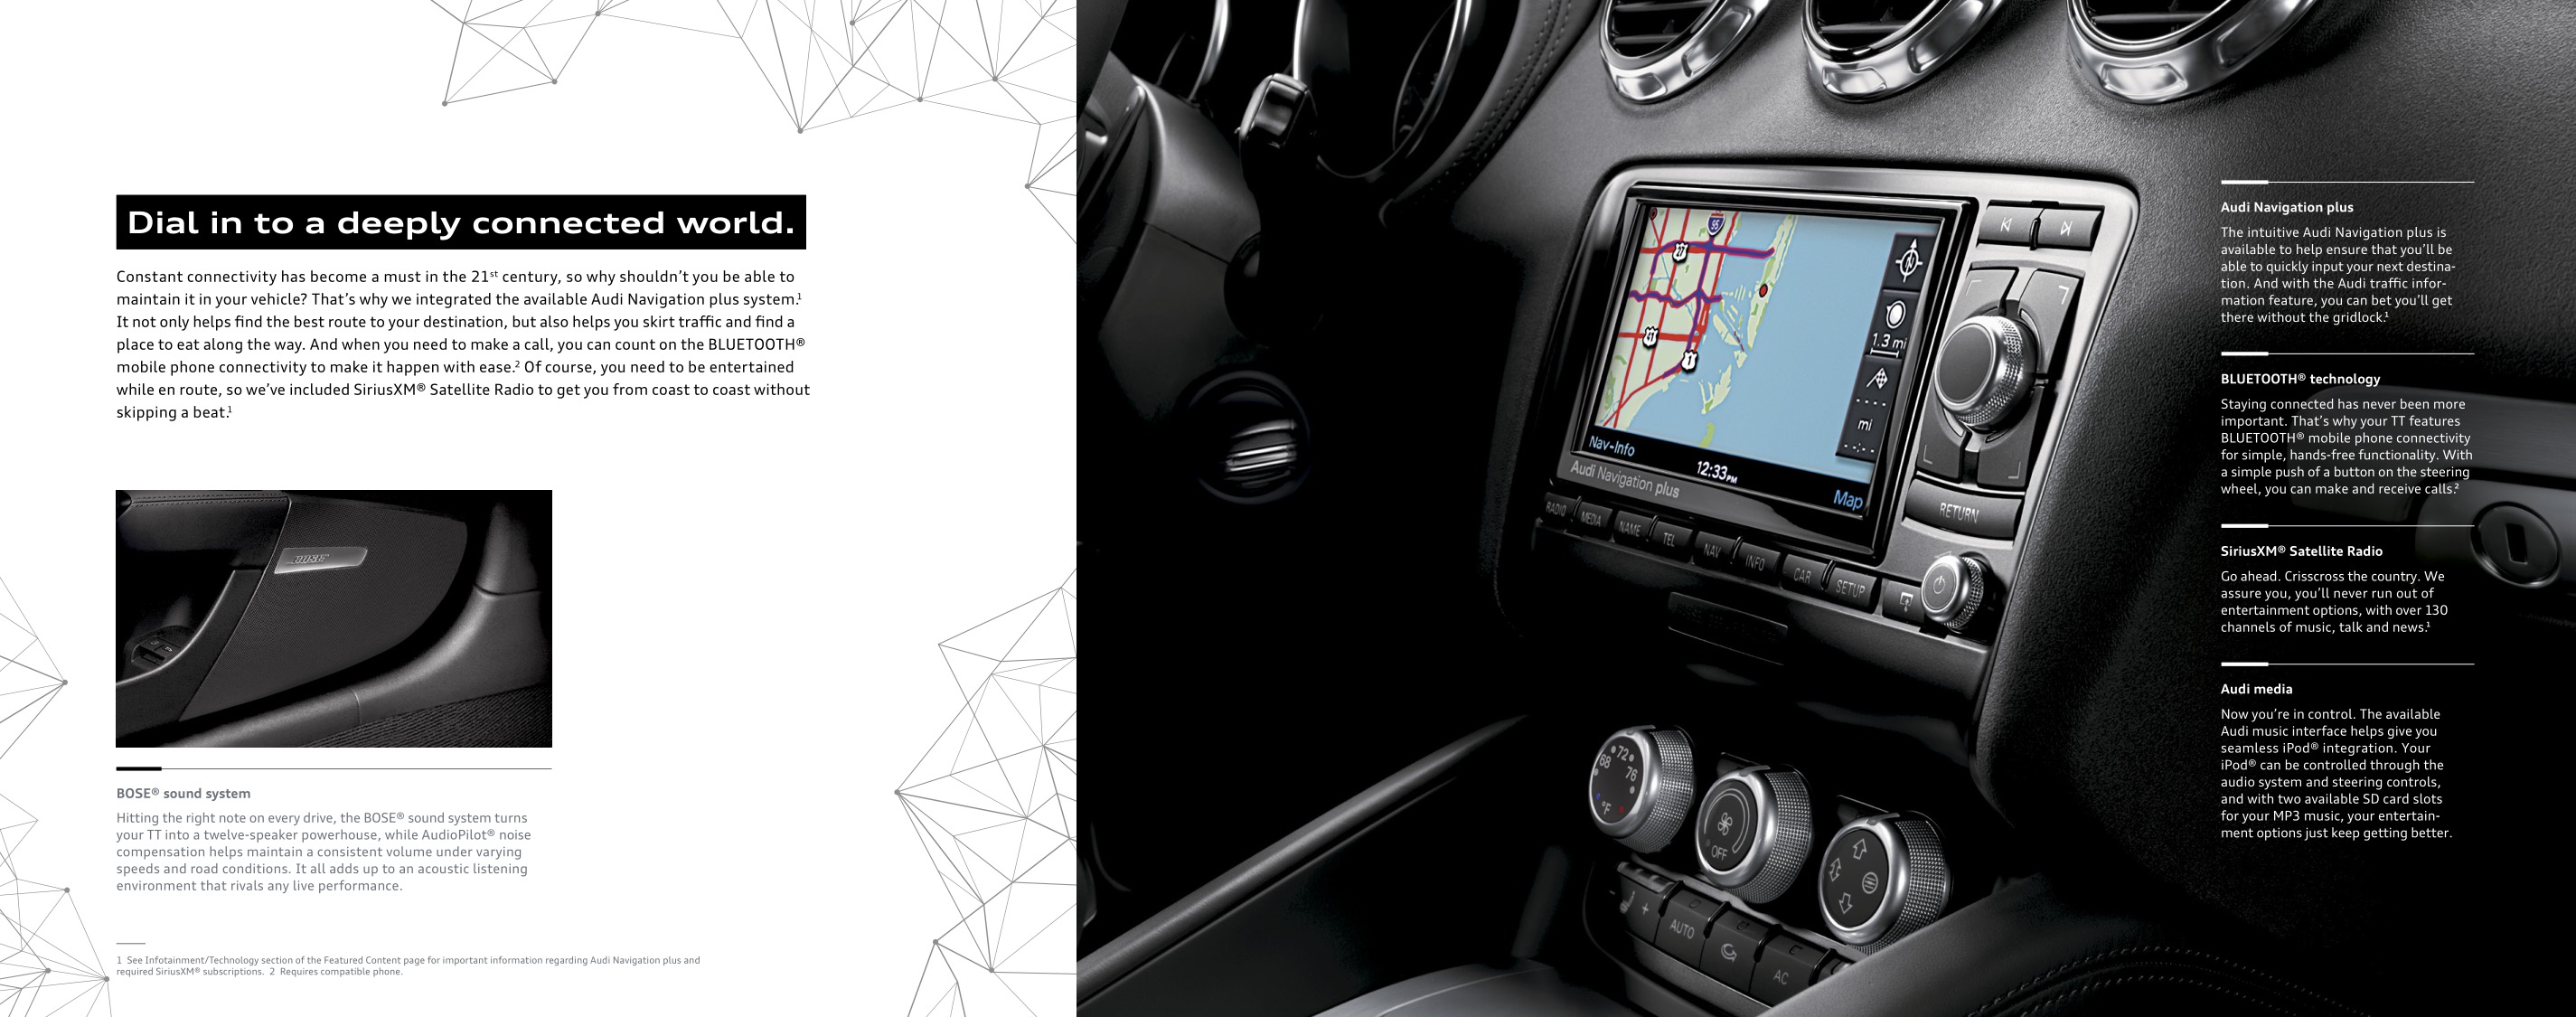 2014 Audi TT Brochure Page 12